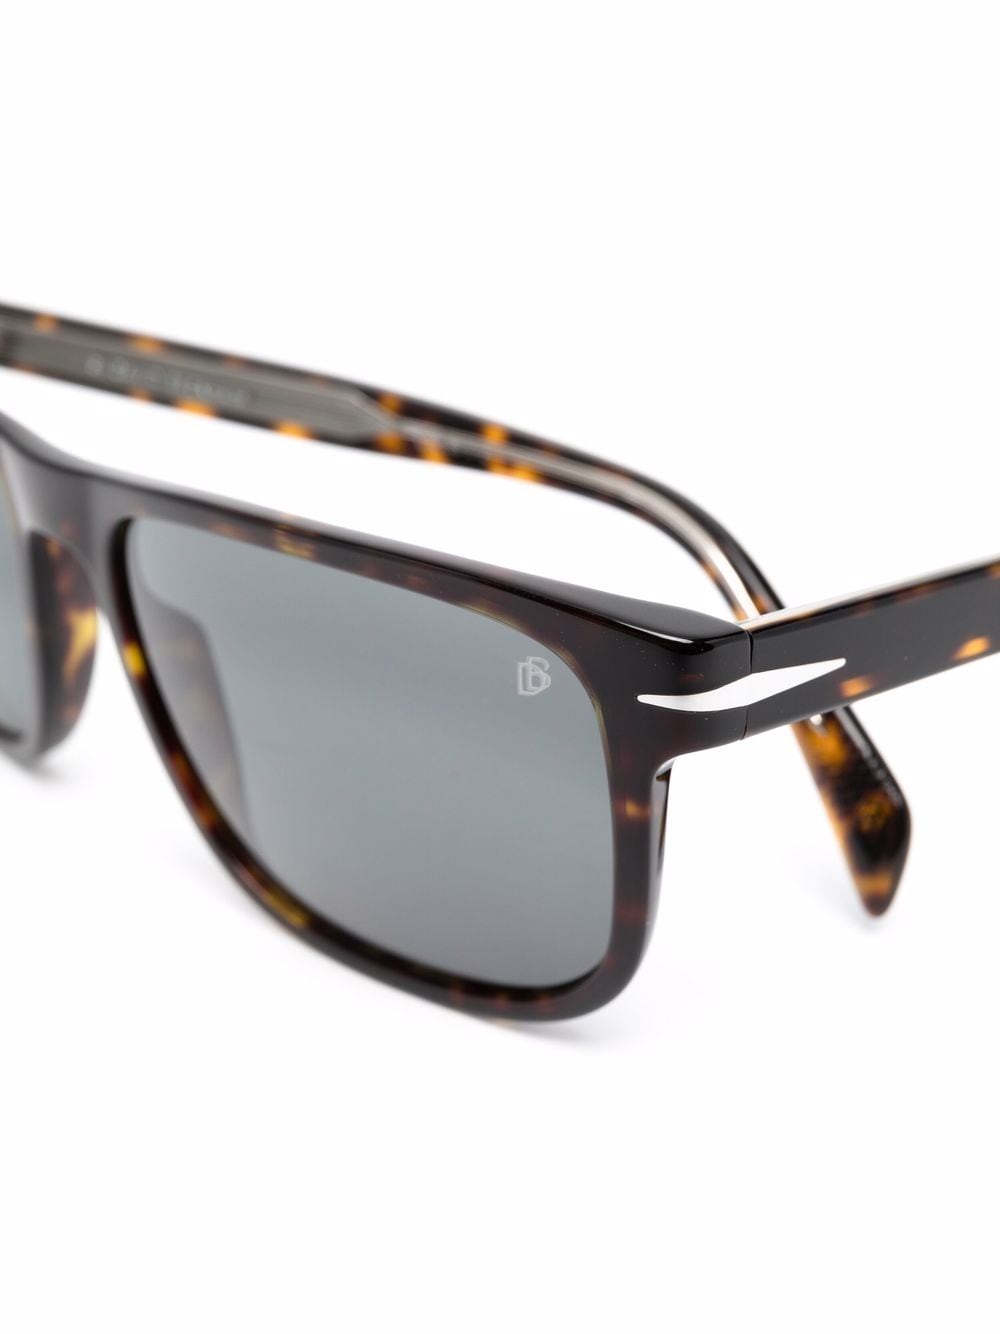 фото Eyewear by david beckham солнцезащитные очки в оправе черепаховой расцветки